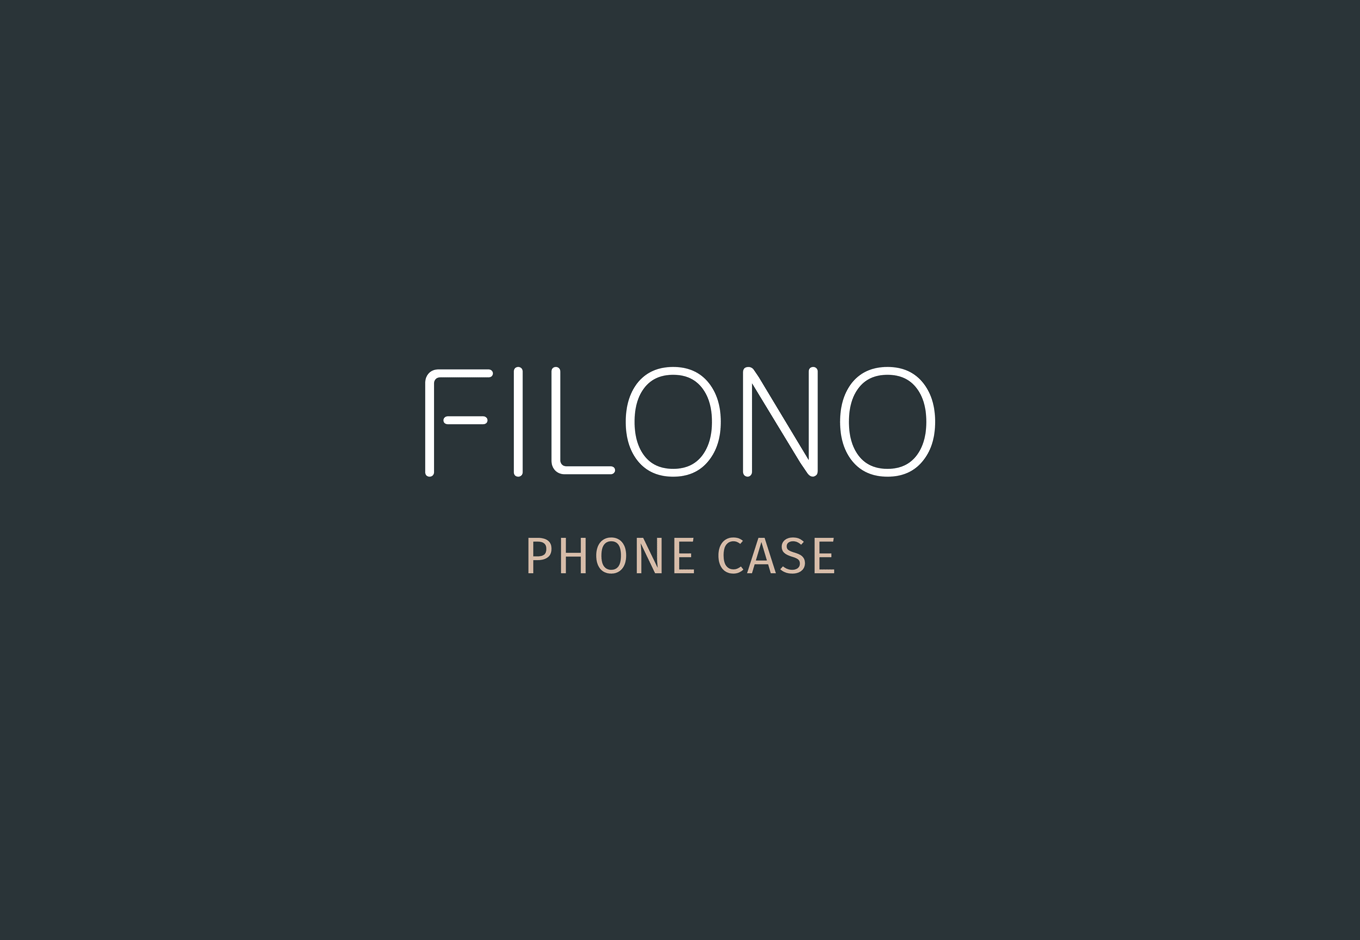 Corporate Identity Filono Phone Case